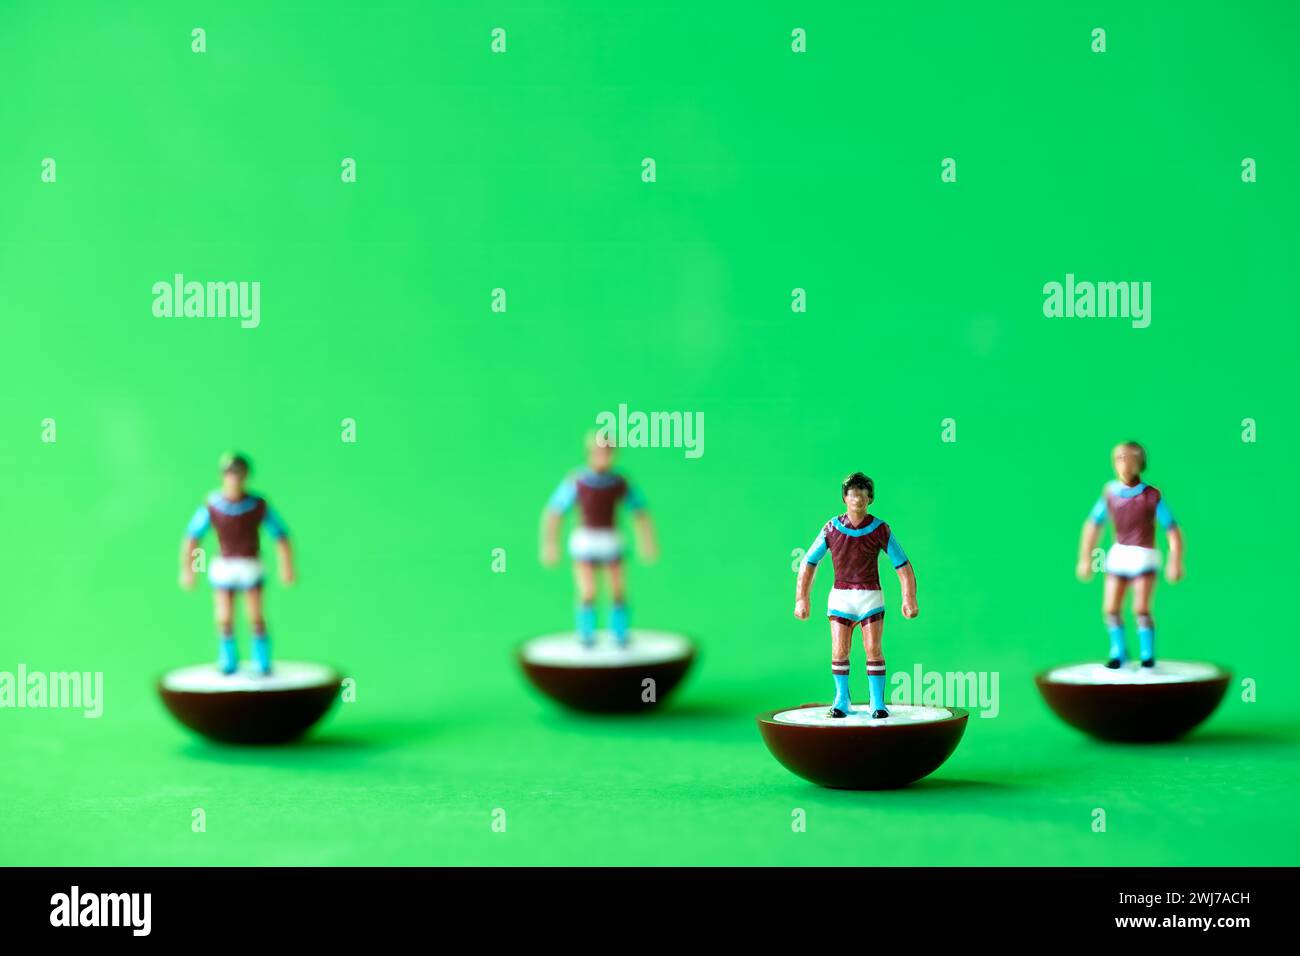 Un groupe de figurine miniature Subbuteo peinte dans les couleurs de l'équipe à domicile Aston Villa FC : chemises Bordeaux et bleues, shorts blancs et chaussettes Bordeaux et bleues Banque D'Images